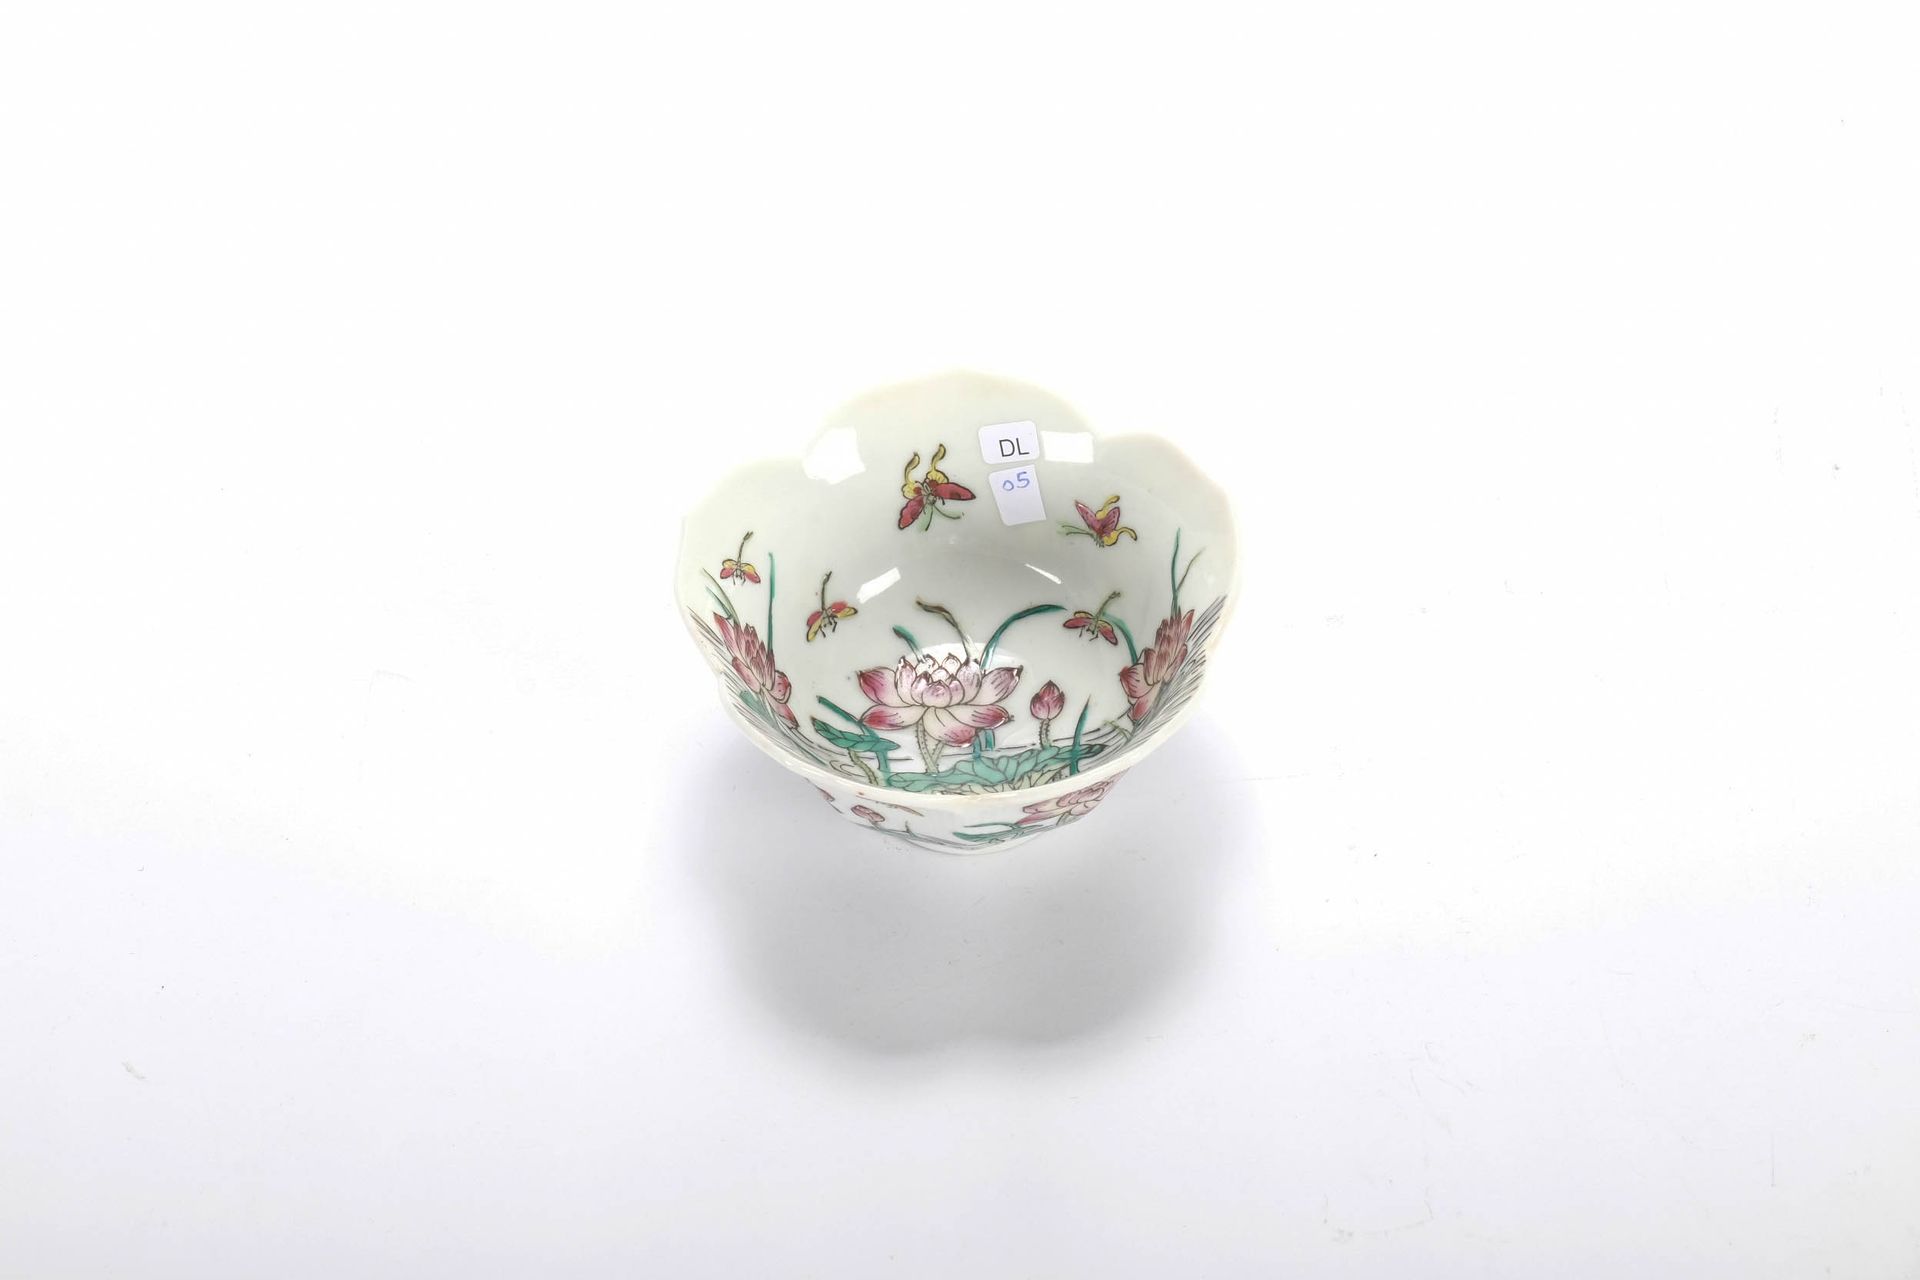 CHINE (CHINA, 中国) 莲花形状的碗。高6厘米，直径11厘米，XX。